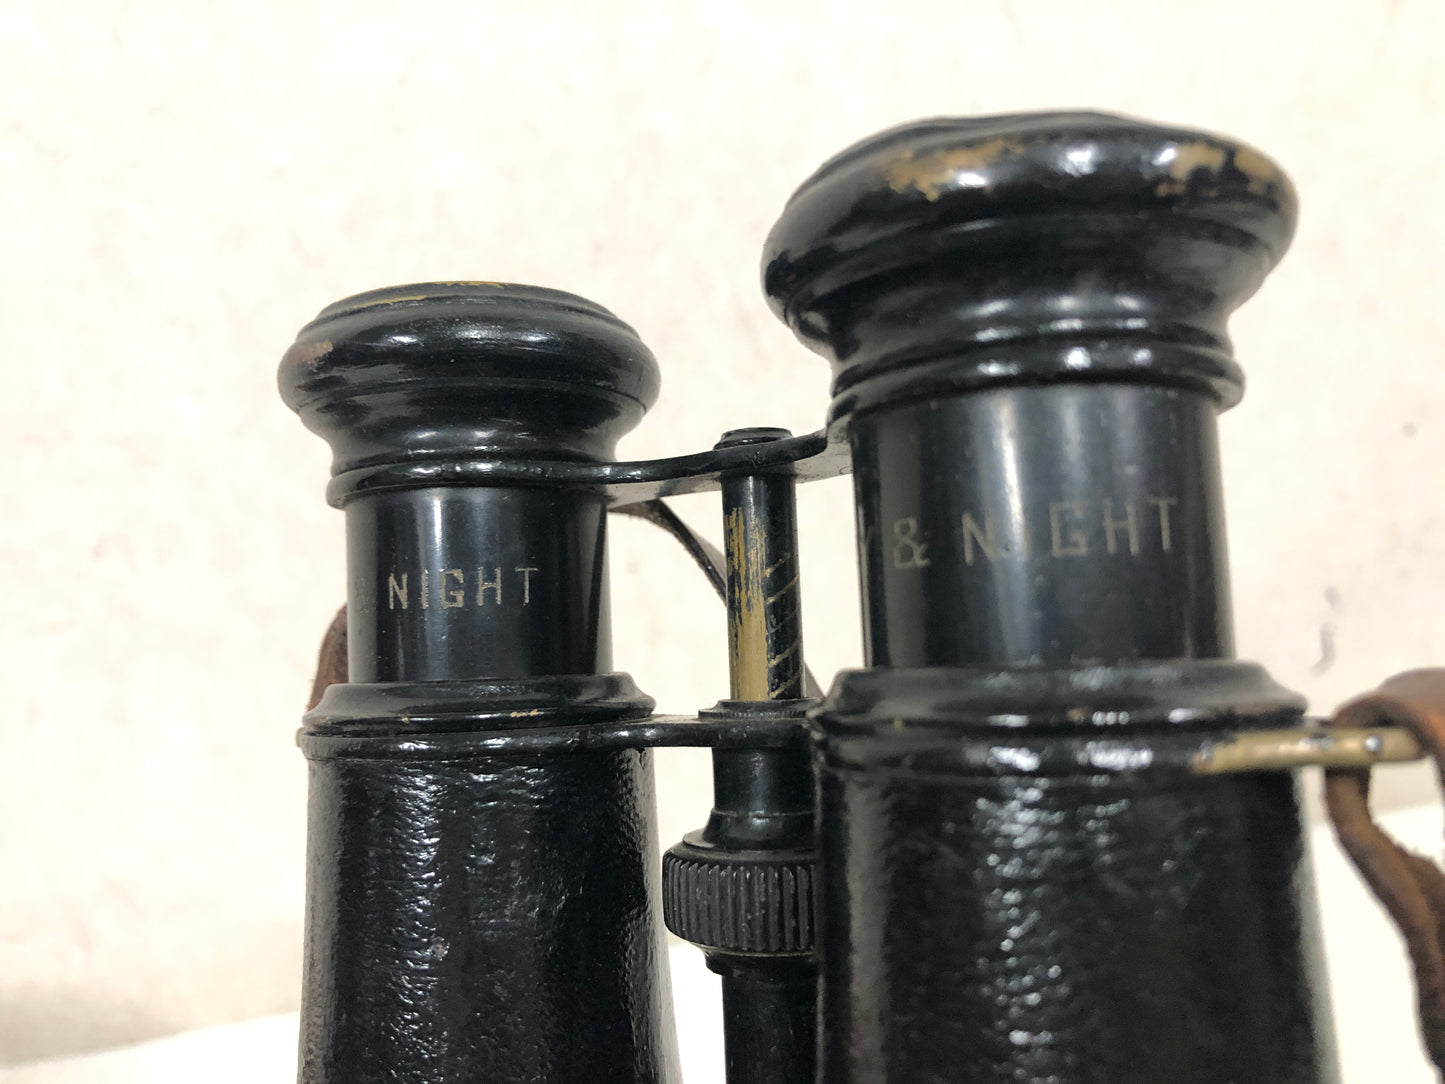 Y4057 Imperial Japan Army Binoculars leather case military Japanese WW2 vintage